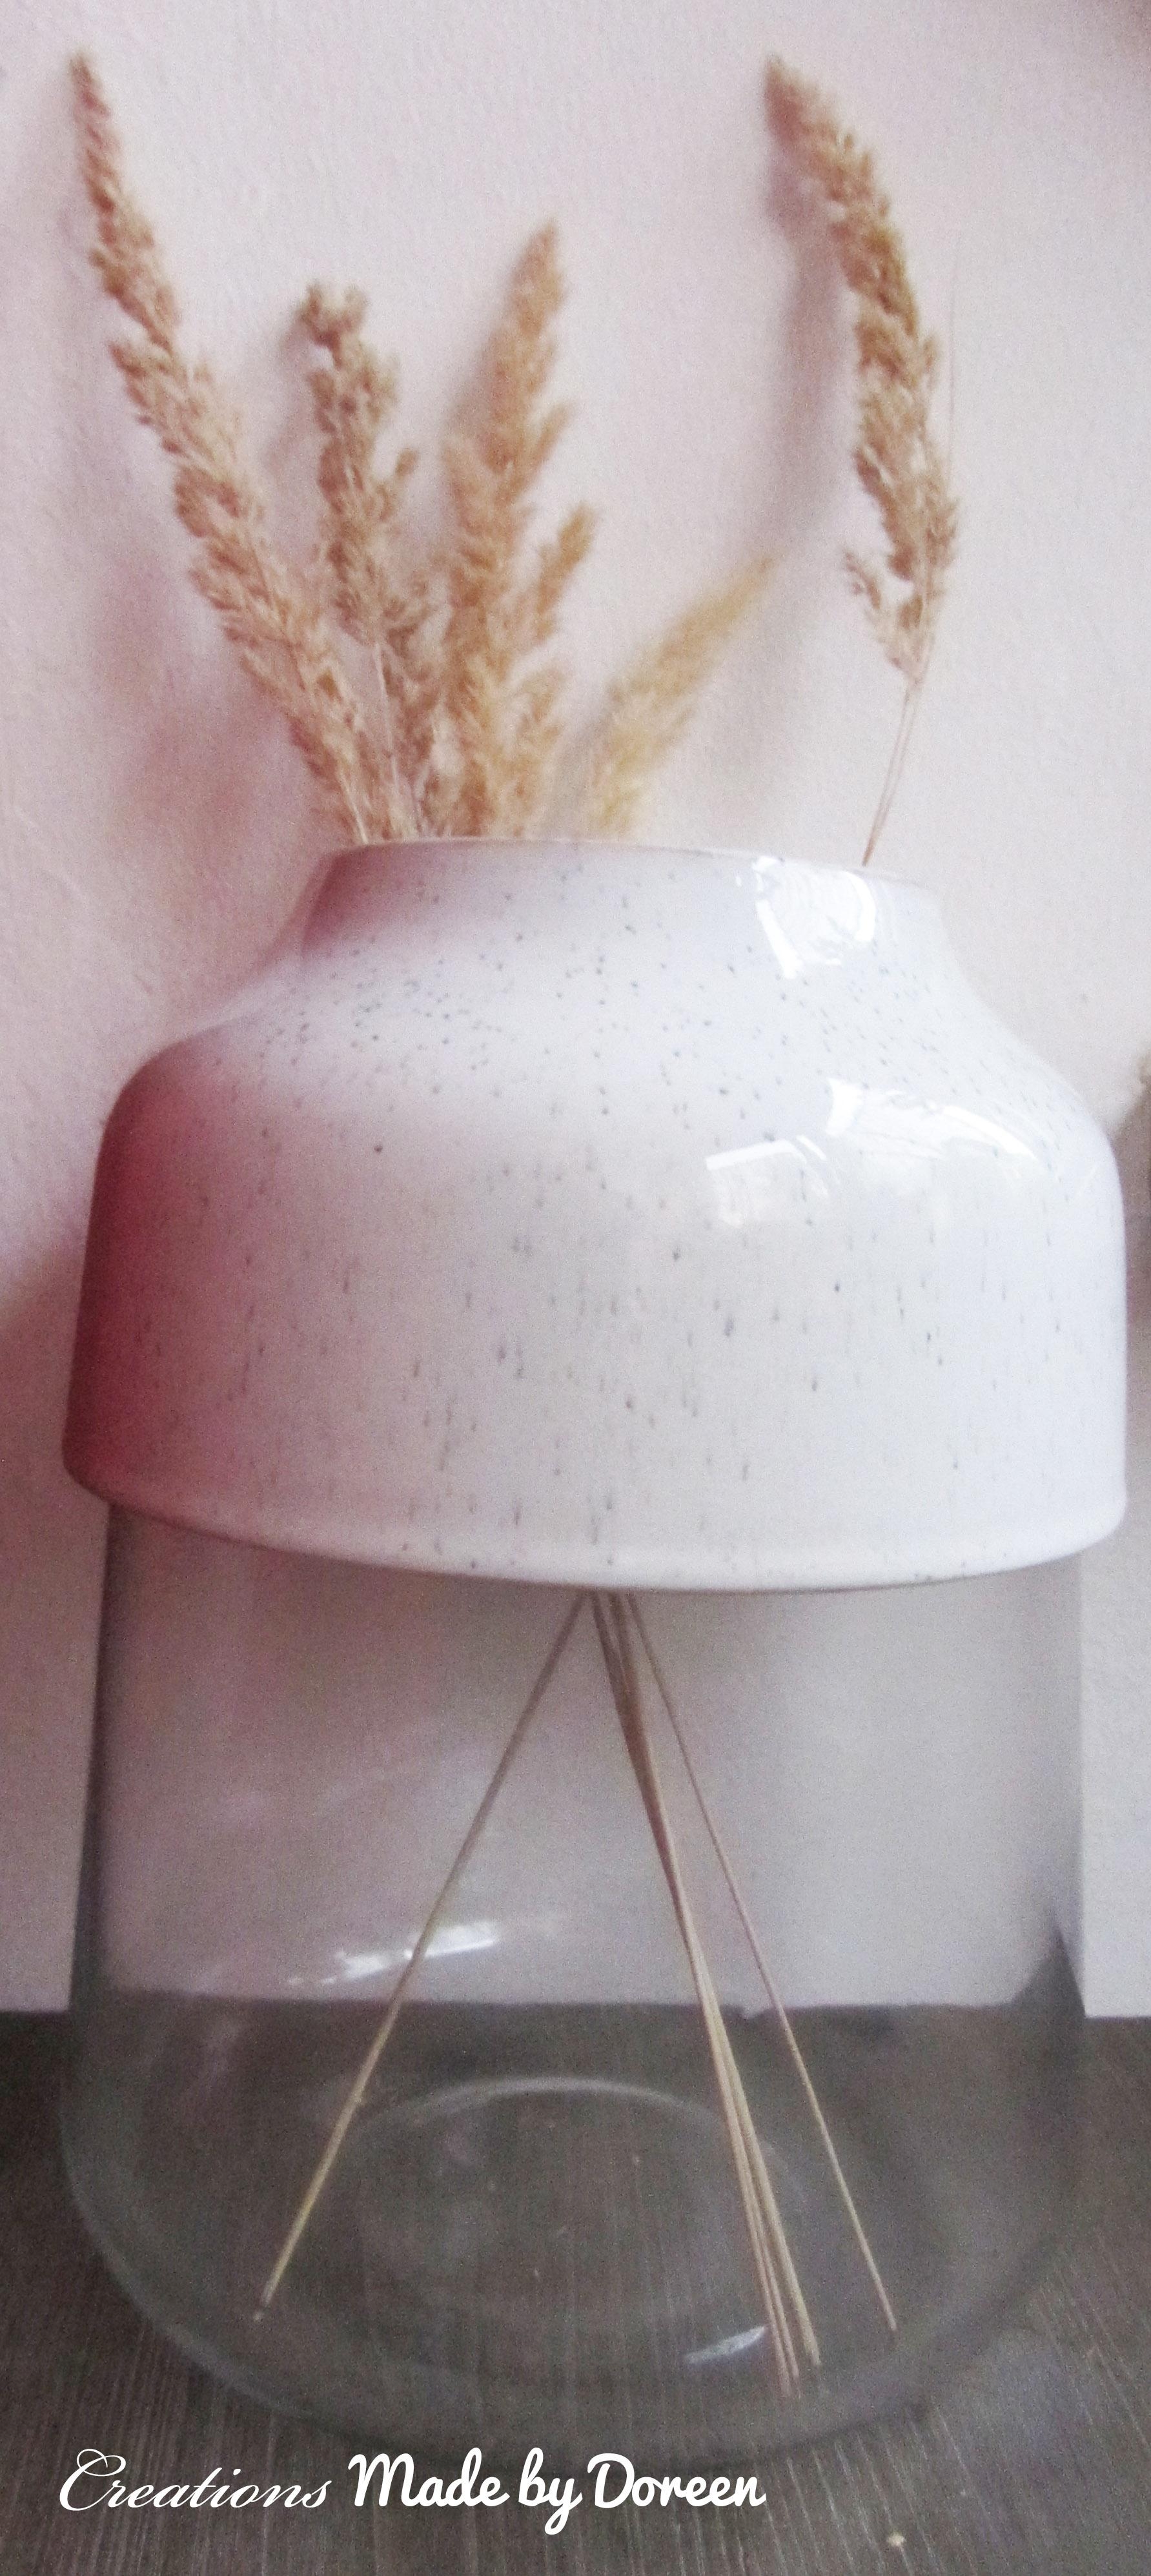 Ich liebe meine neue Vase! Glasvase mit Porzellanaufsatz #skandistyle #Vasendeko #Boho